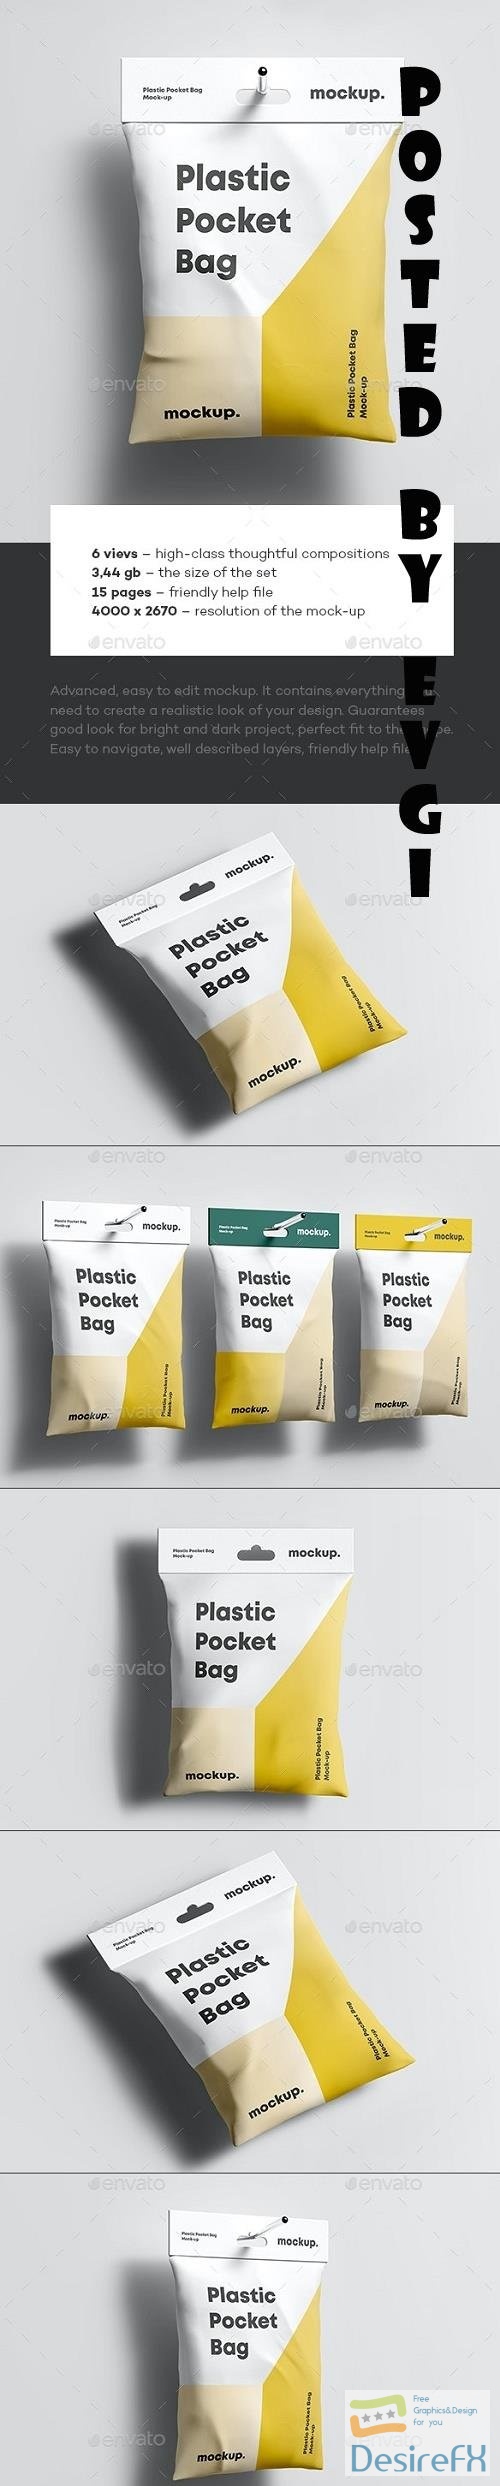 Plastic Pocket Bag Mock-up - 35372931